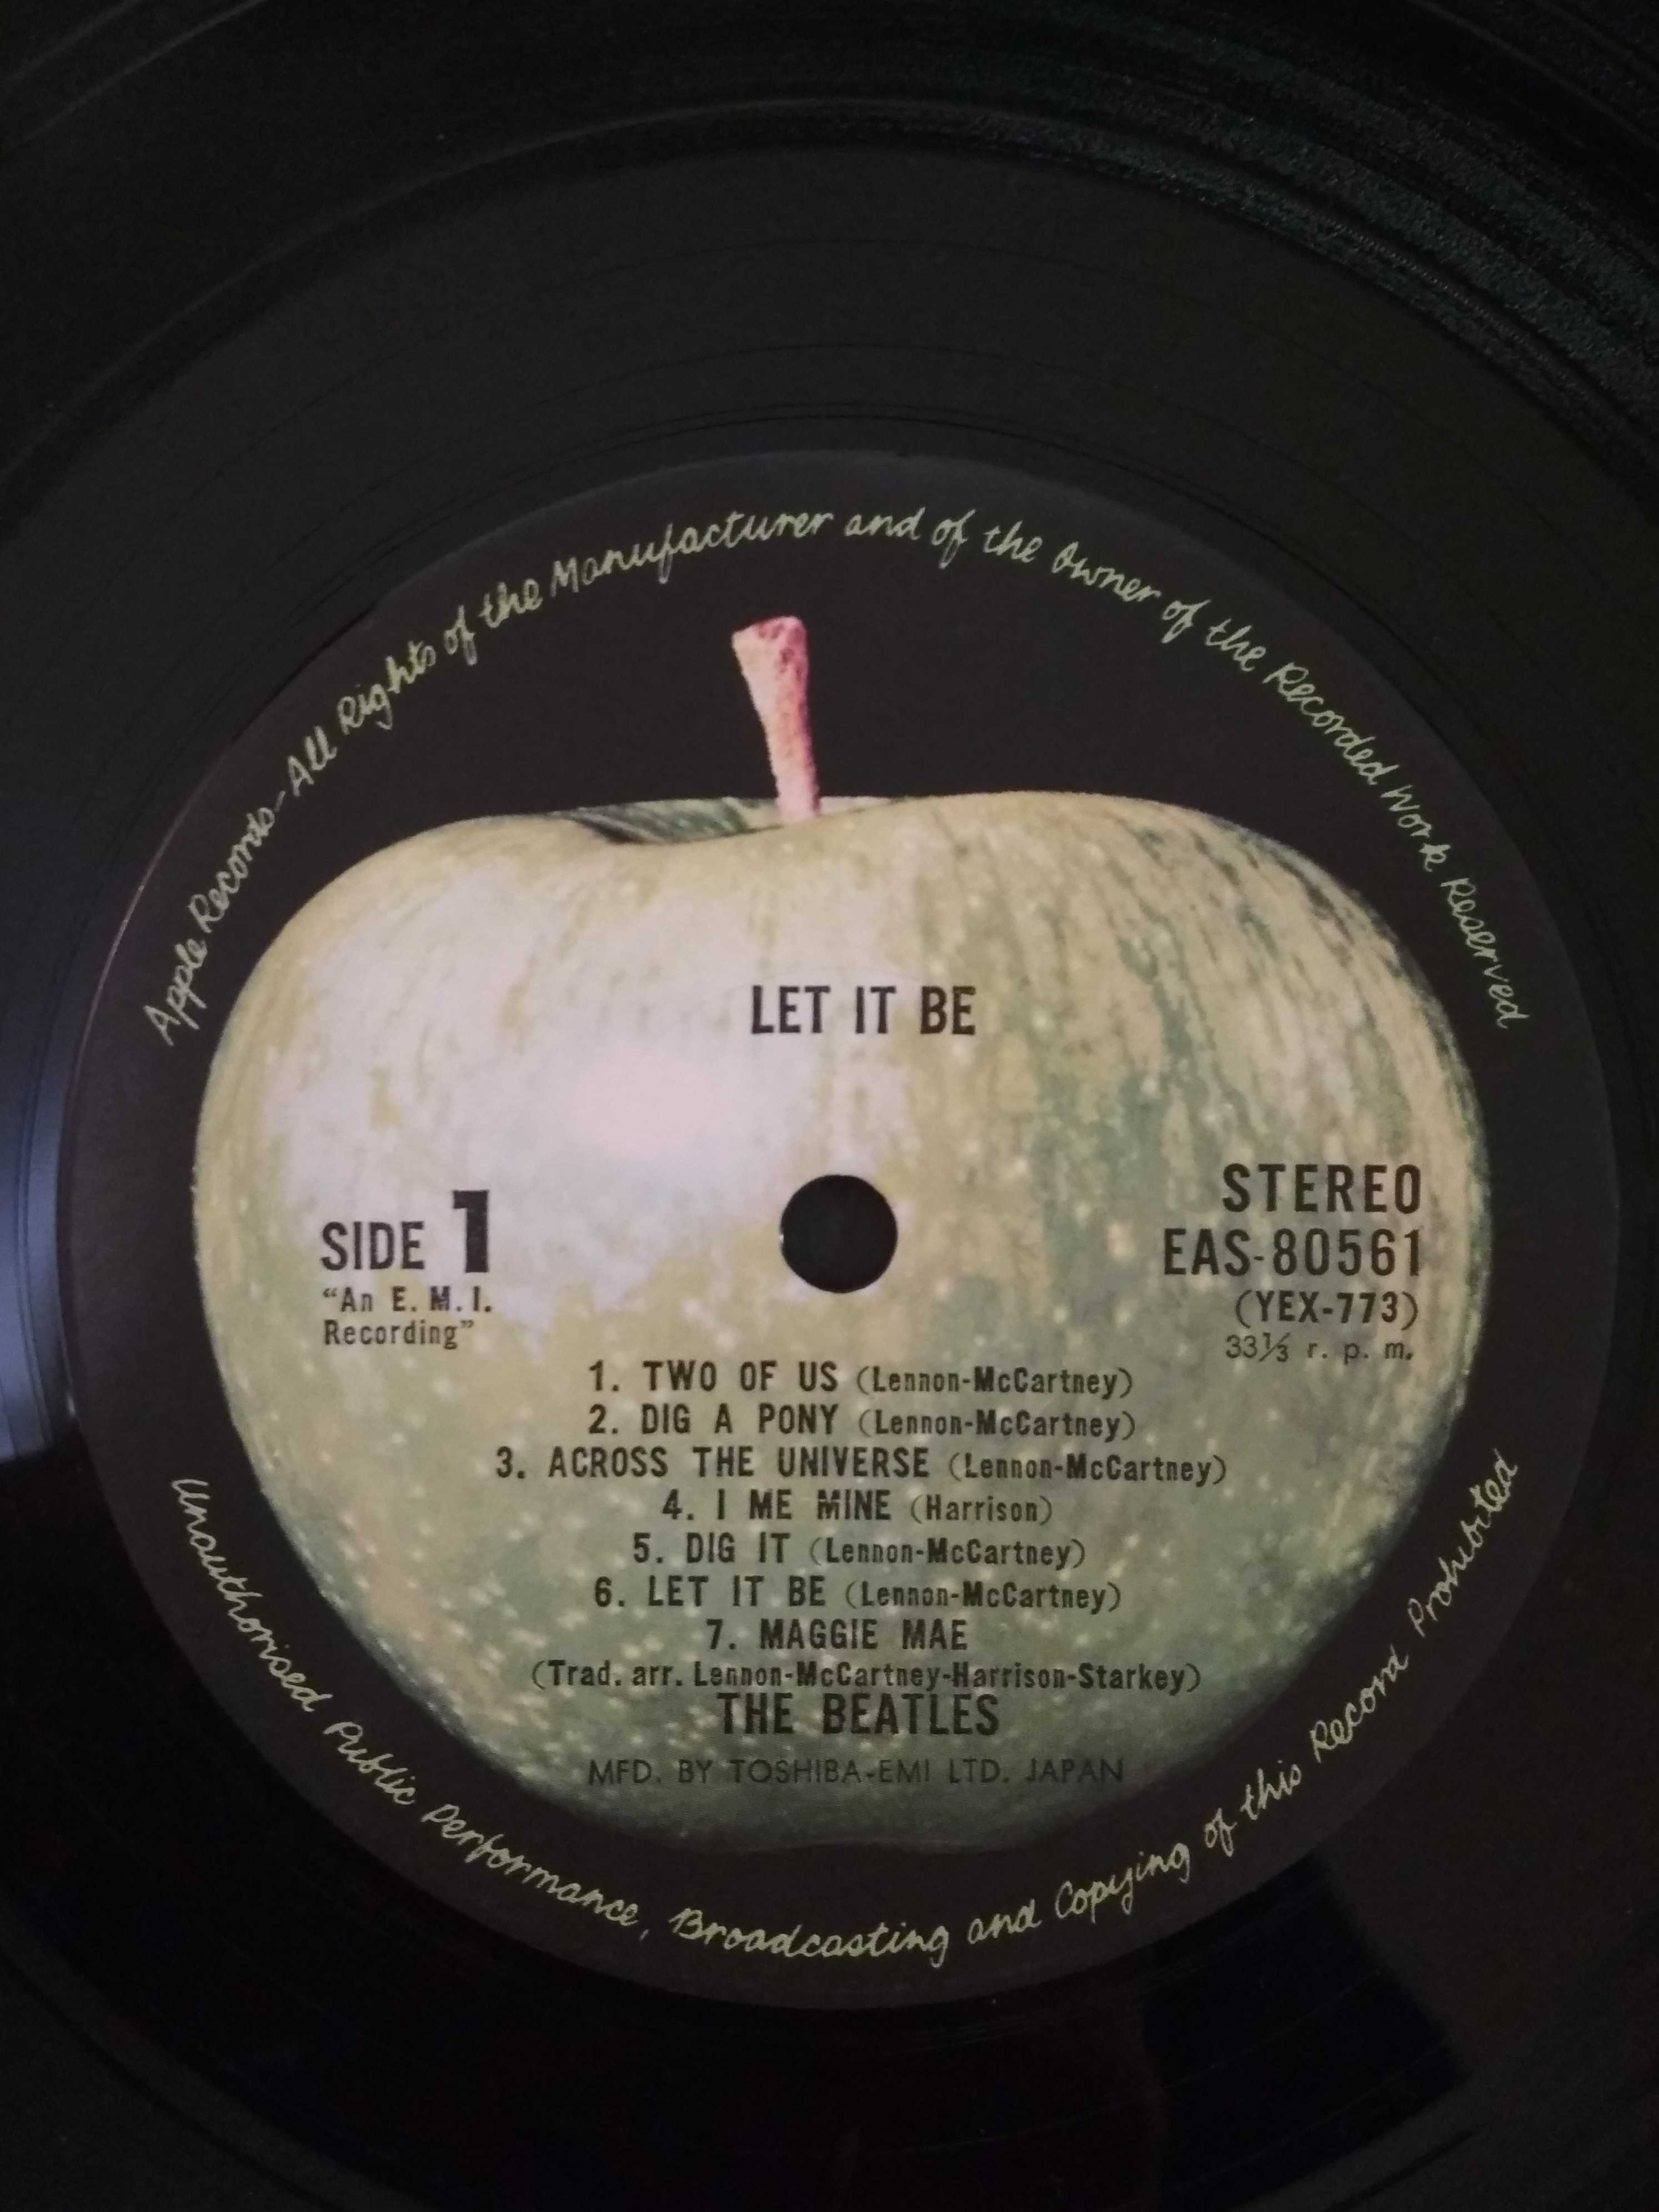 The Beatles - Let it be (1970, Apple Rec EAP 80561, GF, OIS, Japan)